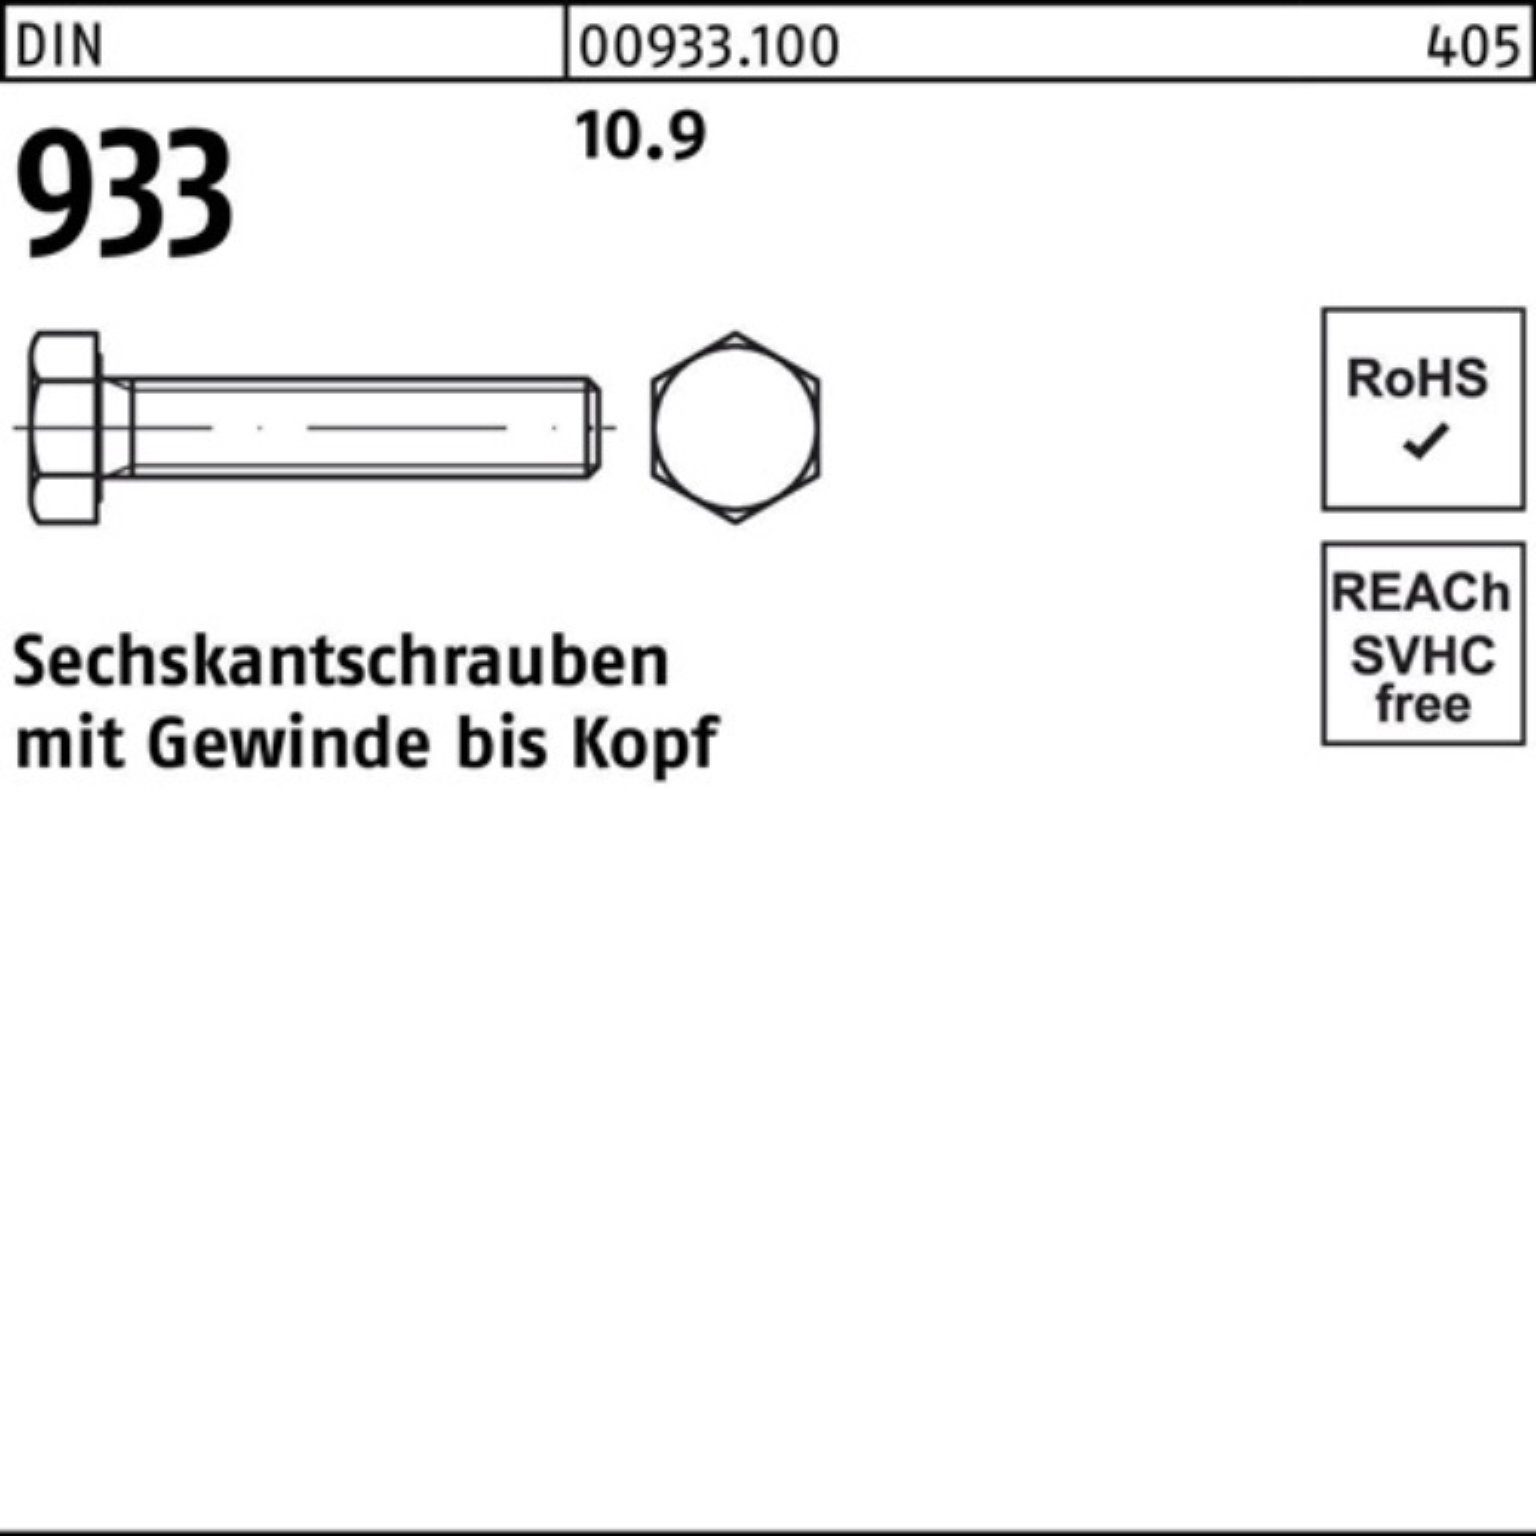 Reyher Sechskantschraube 100er DIN 25 VG 933 Pack M14x DIN Sechskantschraube Stück 93 160 10.9